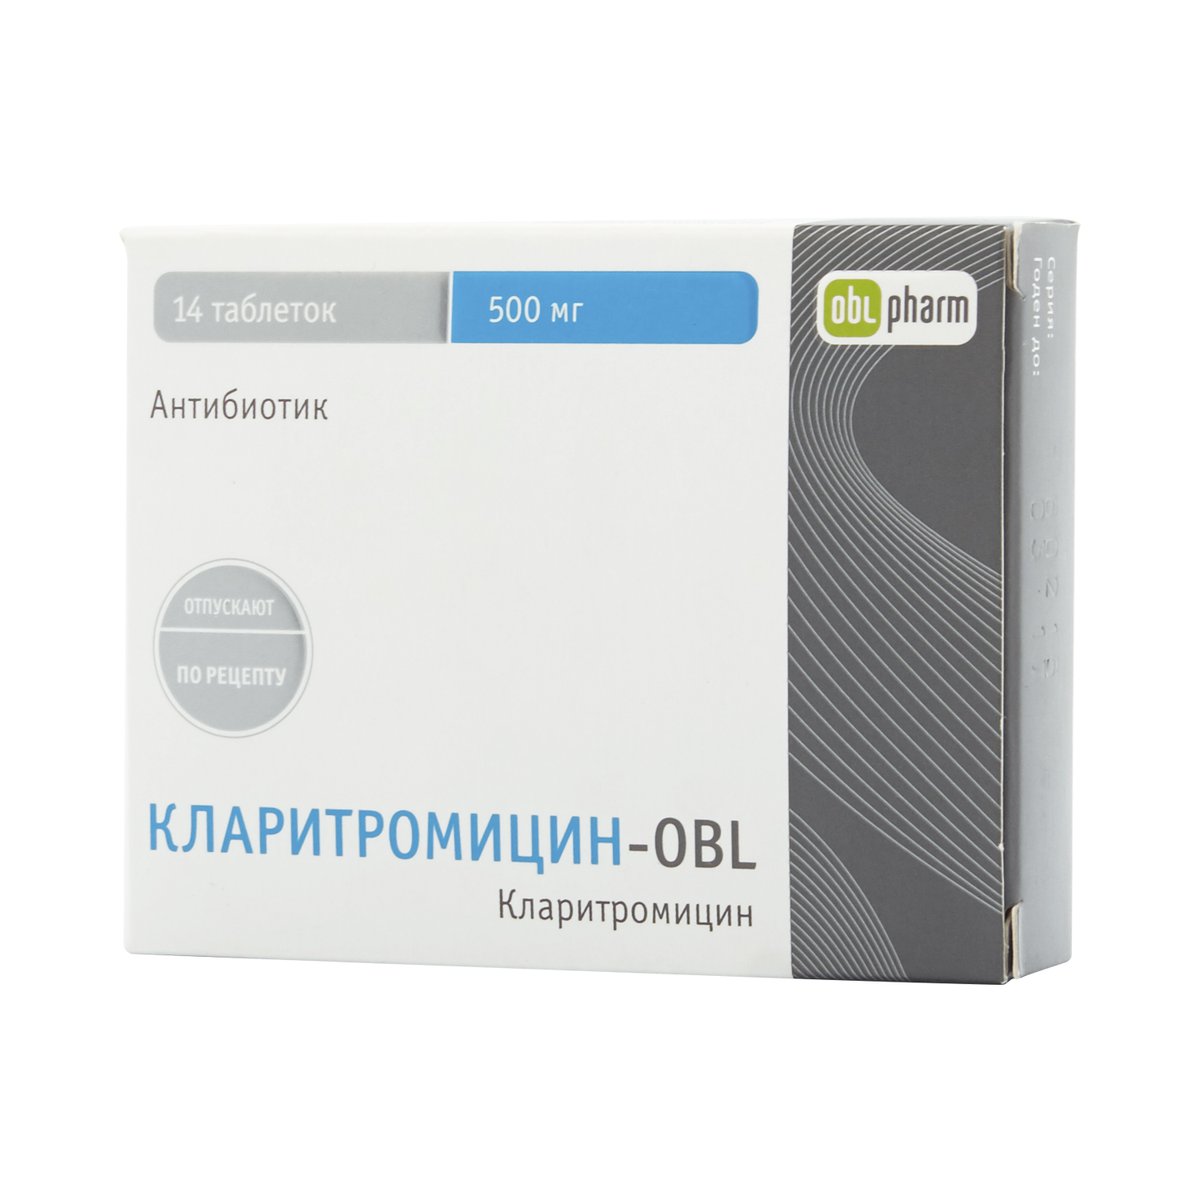 Кларитромицин-obl (таблетки, 14 шт, 500 мг) - цена,  онлайн в .